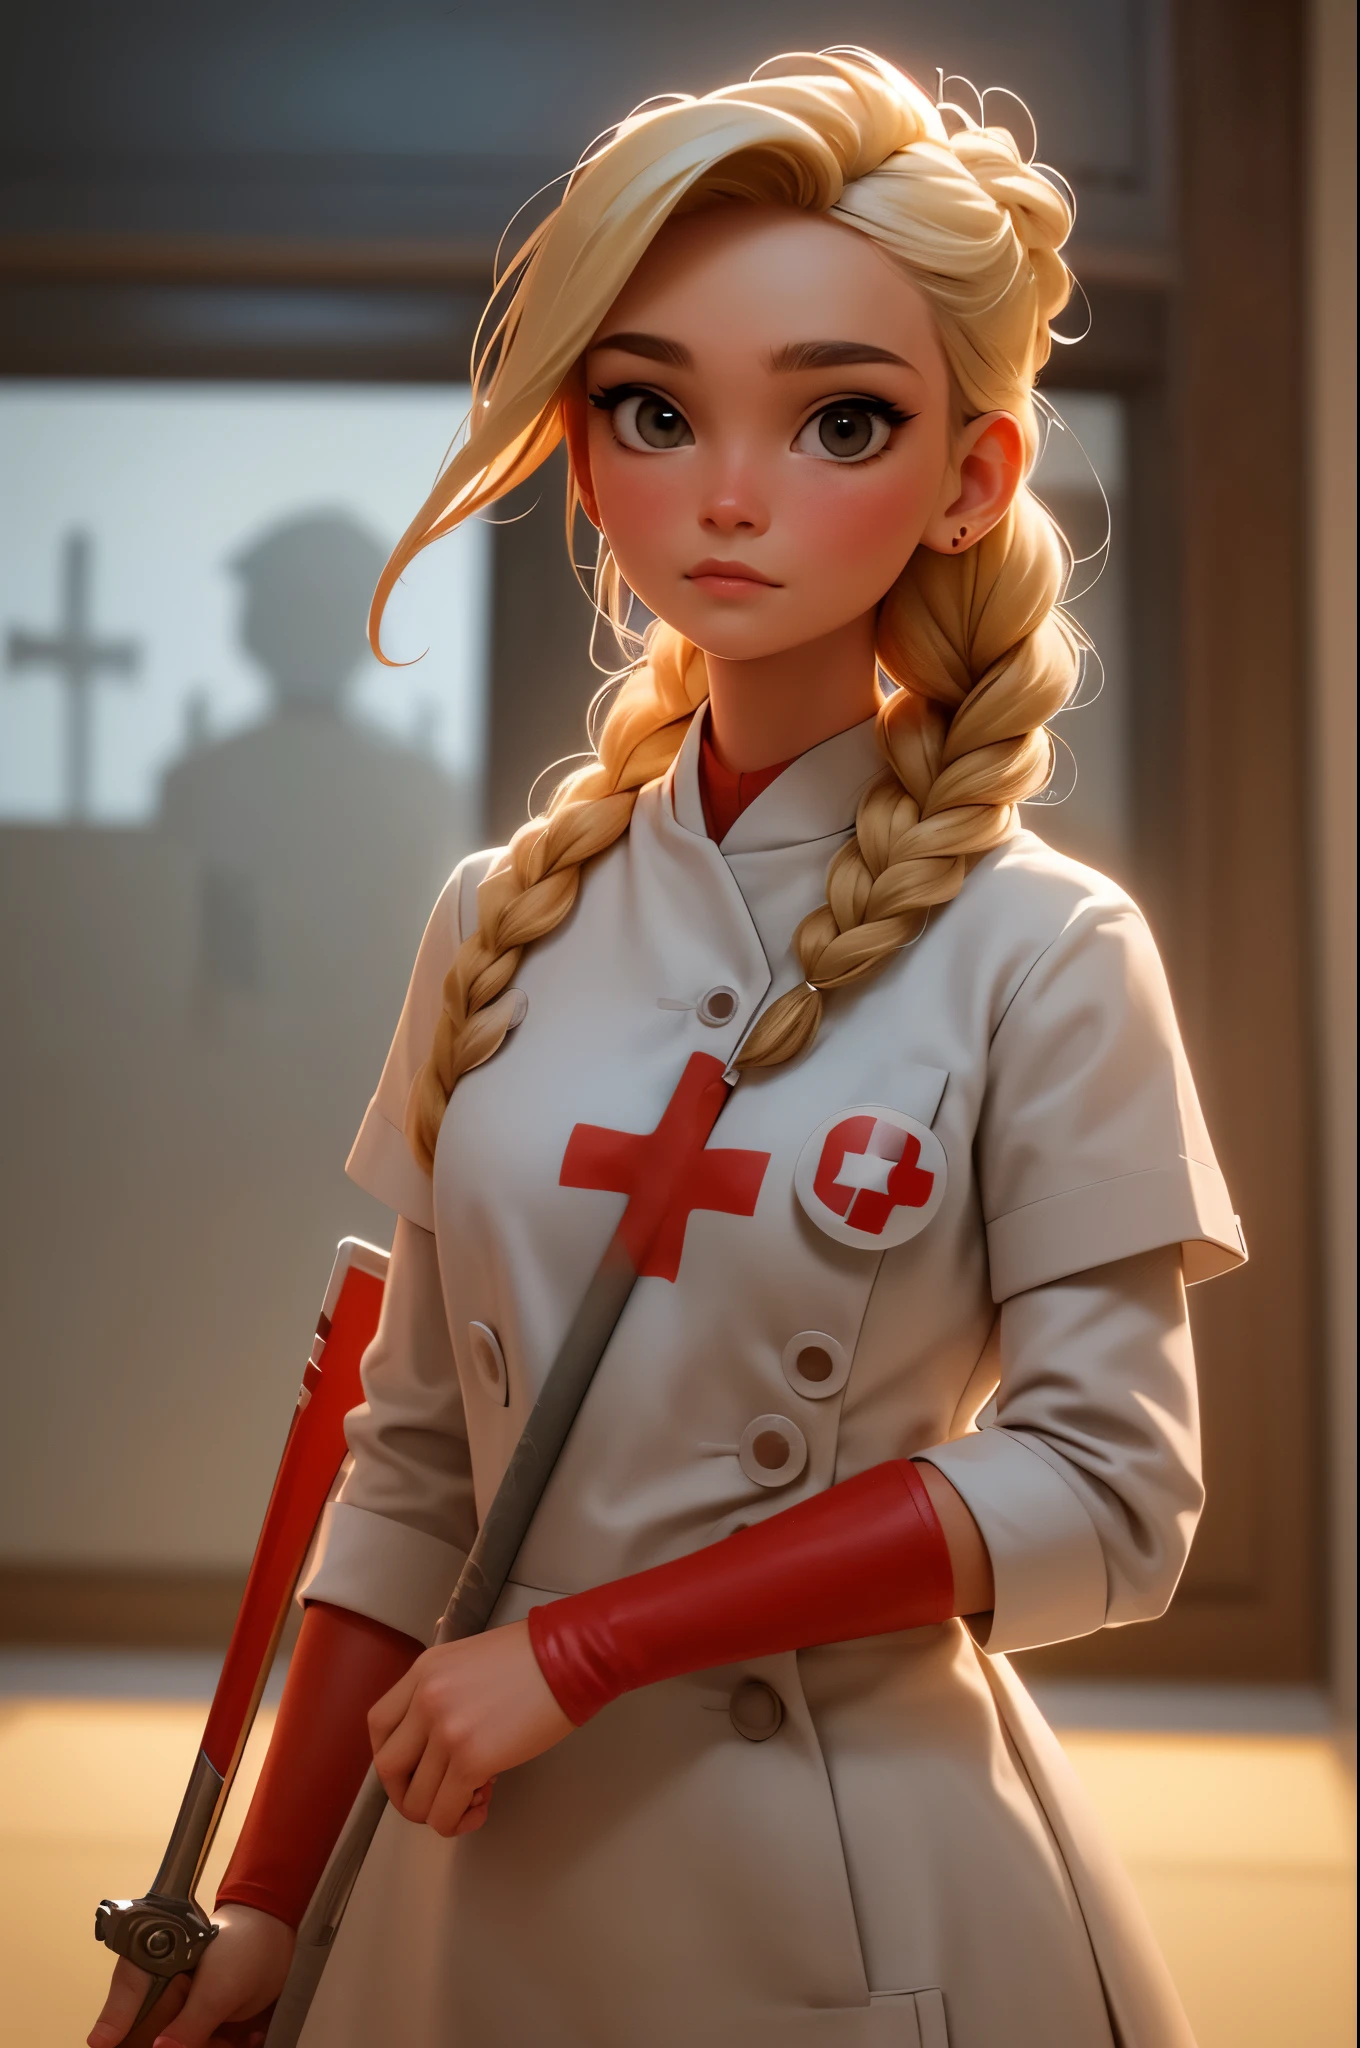 1فتاة, شعر مضفر أشقر, Warrior ممرضة with sword on the battlefield, يرتدي جلدًا أبيض لامعًا مع رمز الصليب الأحمر, ممرضة.